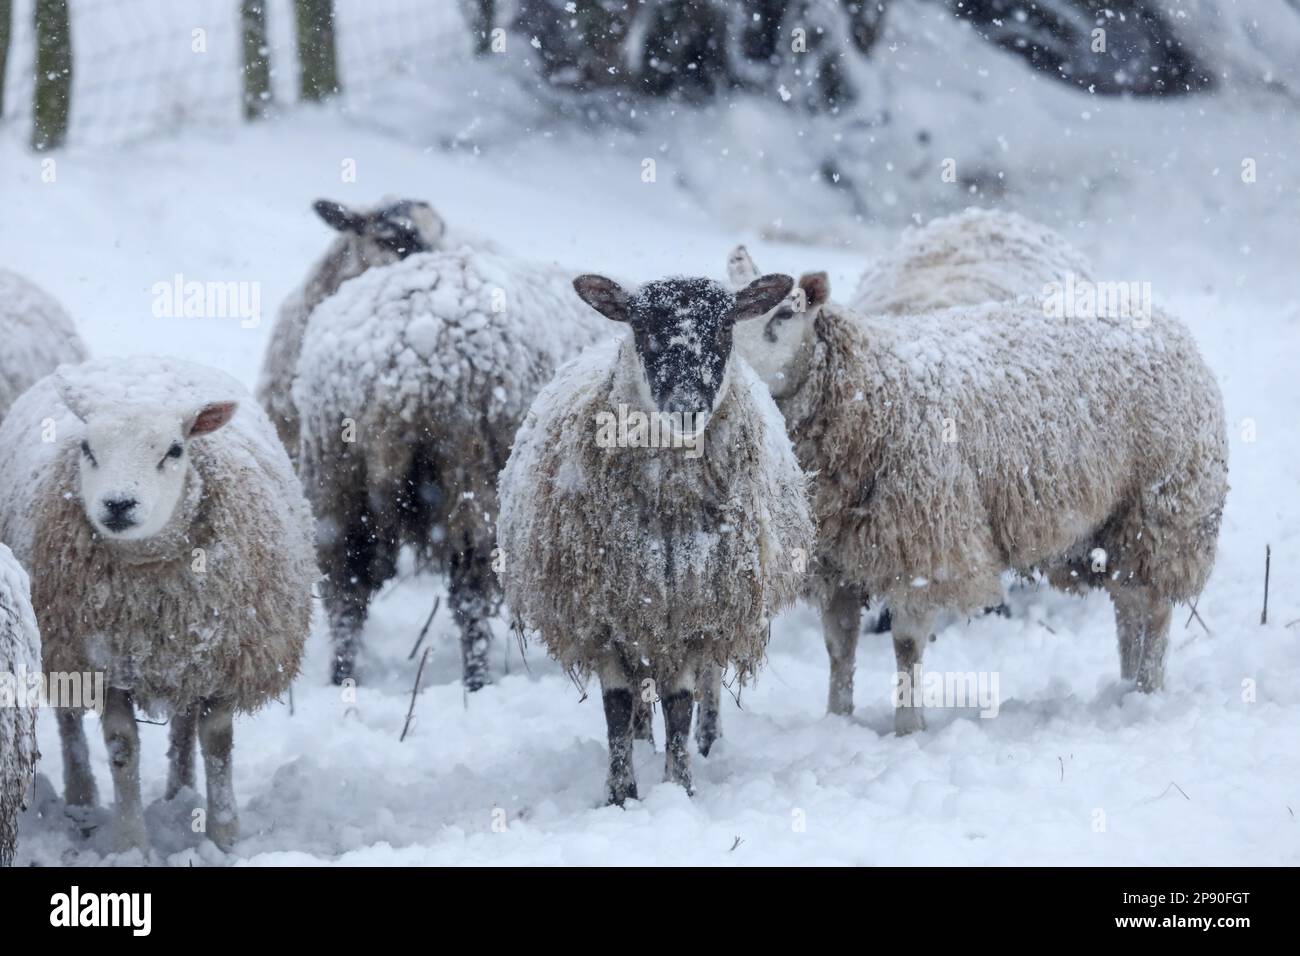 Teesdale, County Durham, Großbritannien. 10. März 2023 Wetter in Großbritannien. Mit einer bernsteinfarbenen Wetterwarnung in der Gewalt schwangere Schafe unter den Bäumen beherbergen, während starker Schnee in Teesdale, County Durham fällt. Schneestürme zu dieser Jahreszeit werden von Bauern in den Dales als „Lambstürme“ bezeichnet, da sie zu der Zeit auftreten, zu der die Schafe ihre Lämmer zur Welt bringen. Kredit: David Forster/Alamy Live News Stockfoto